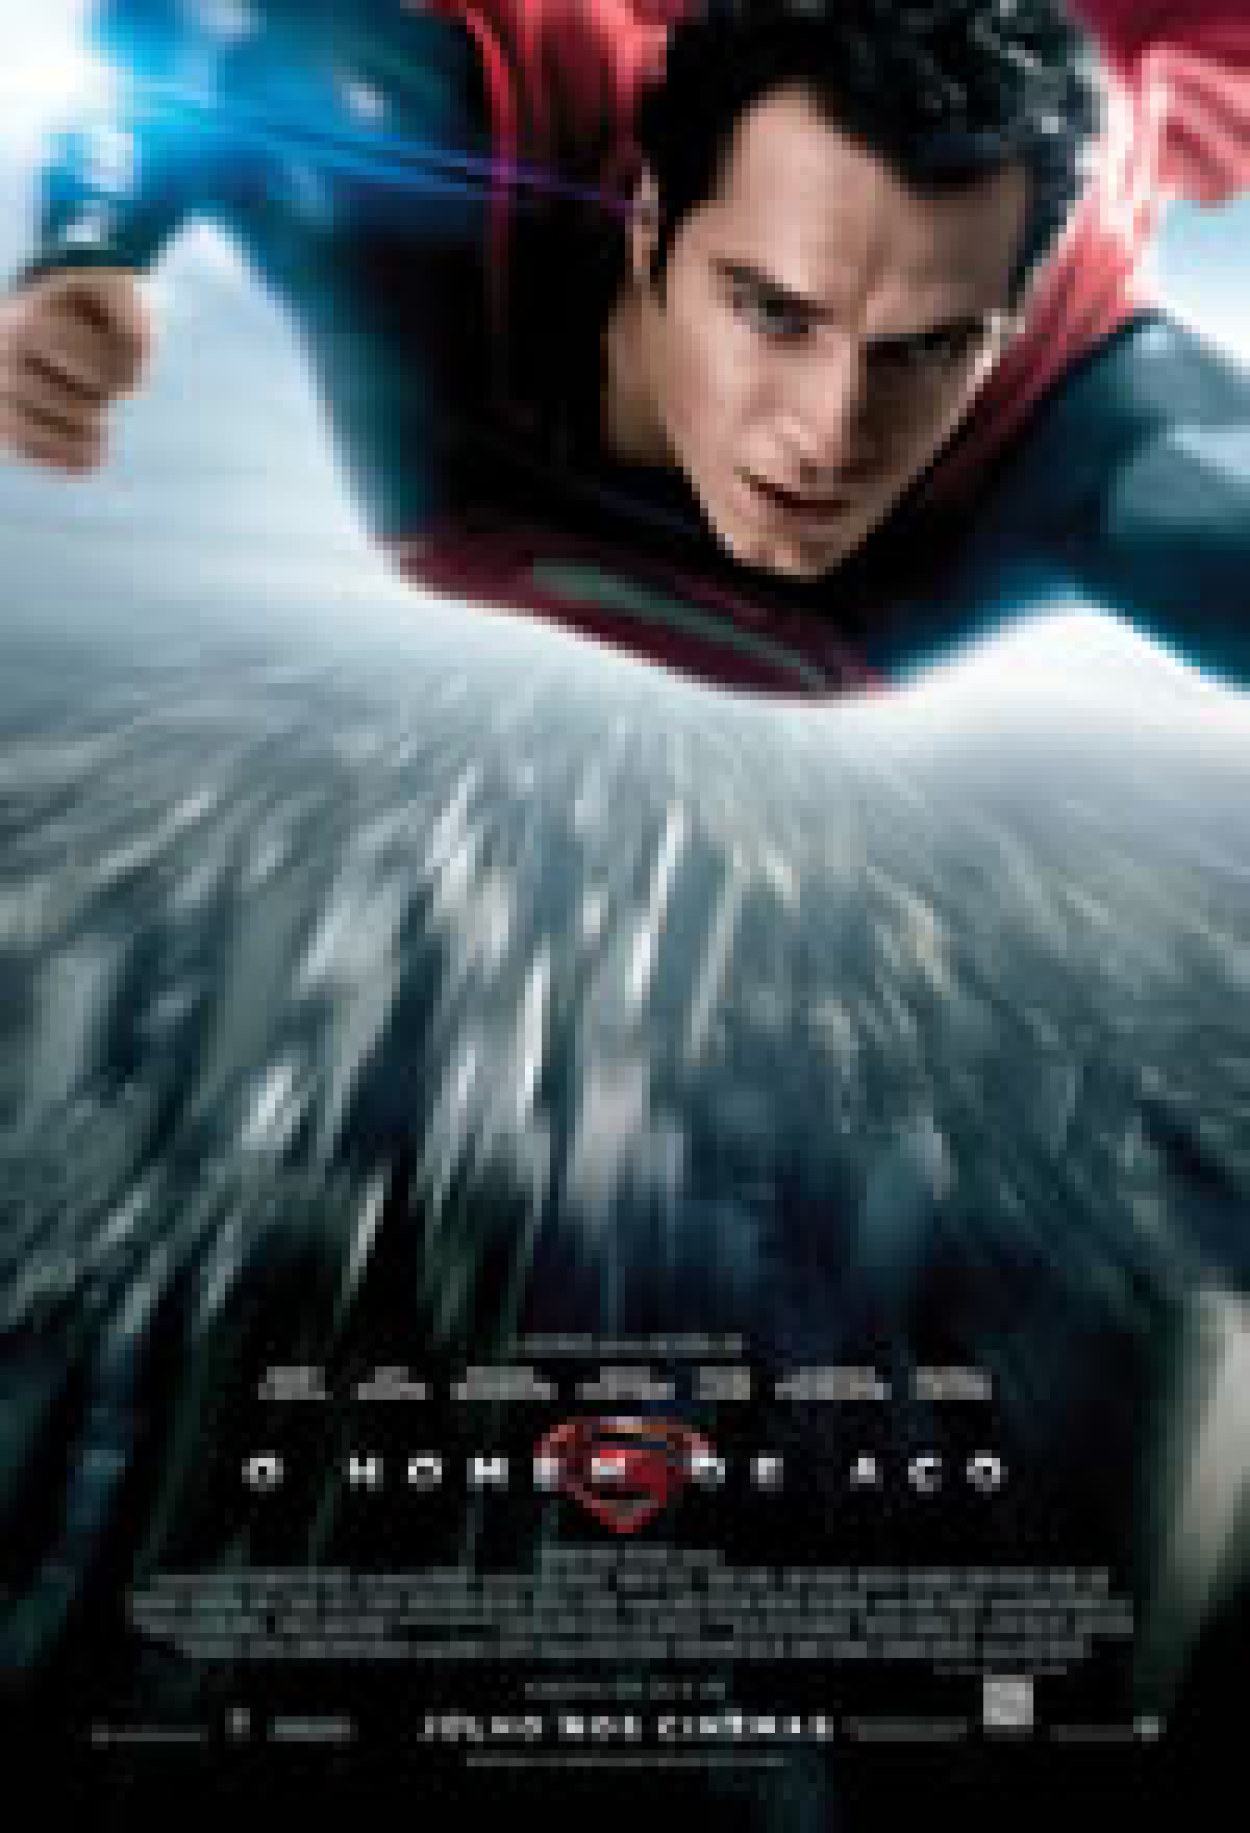 Novo filme do Superman não mostrará herói na juventude, diz James